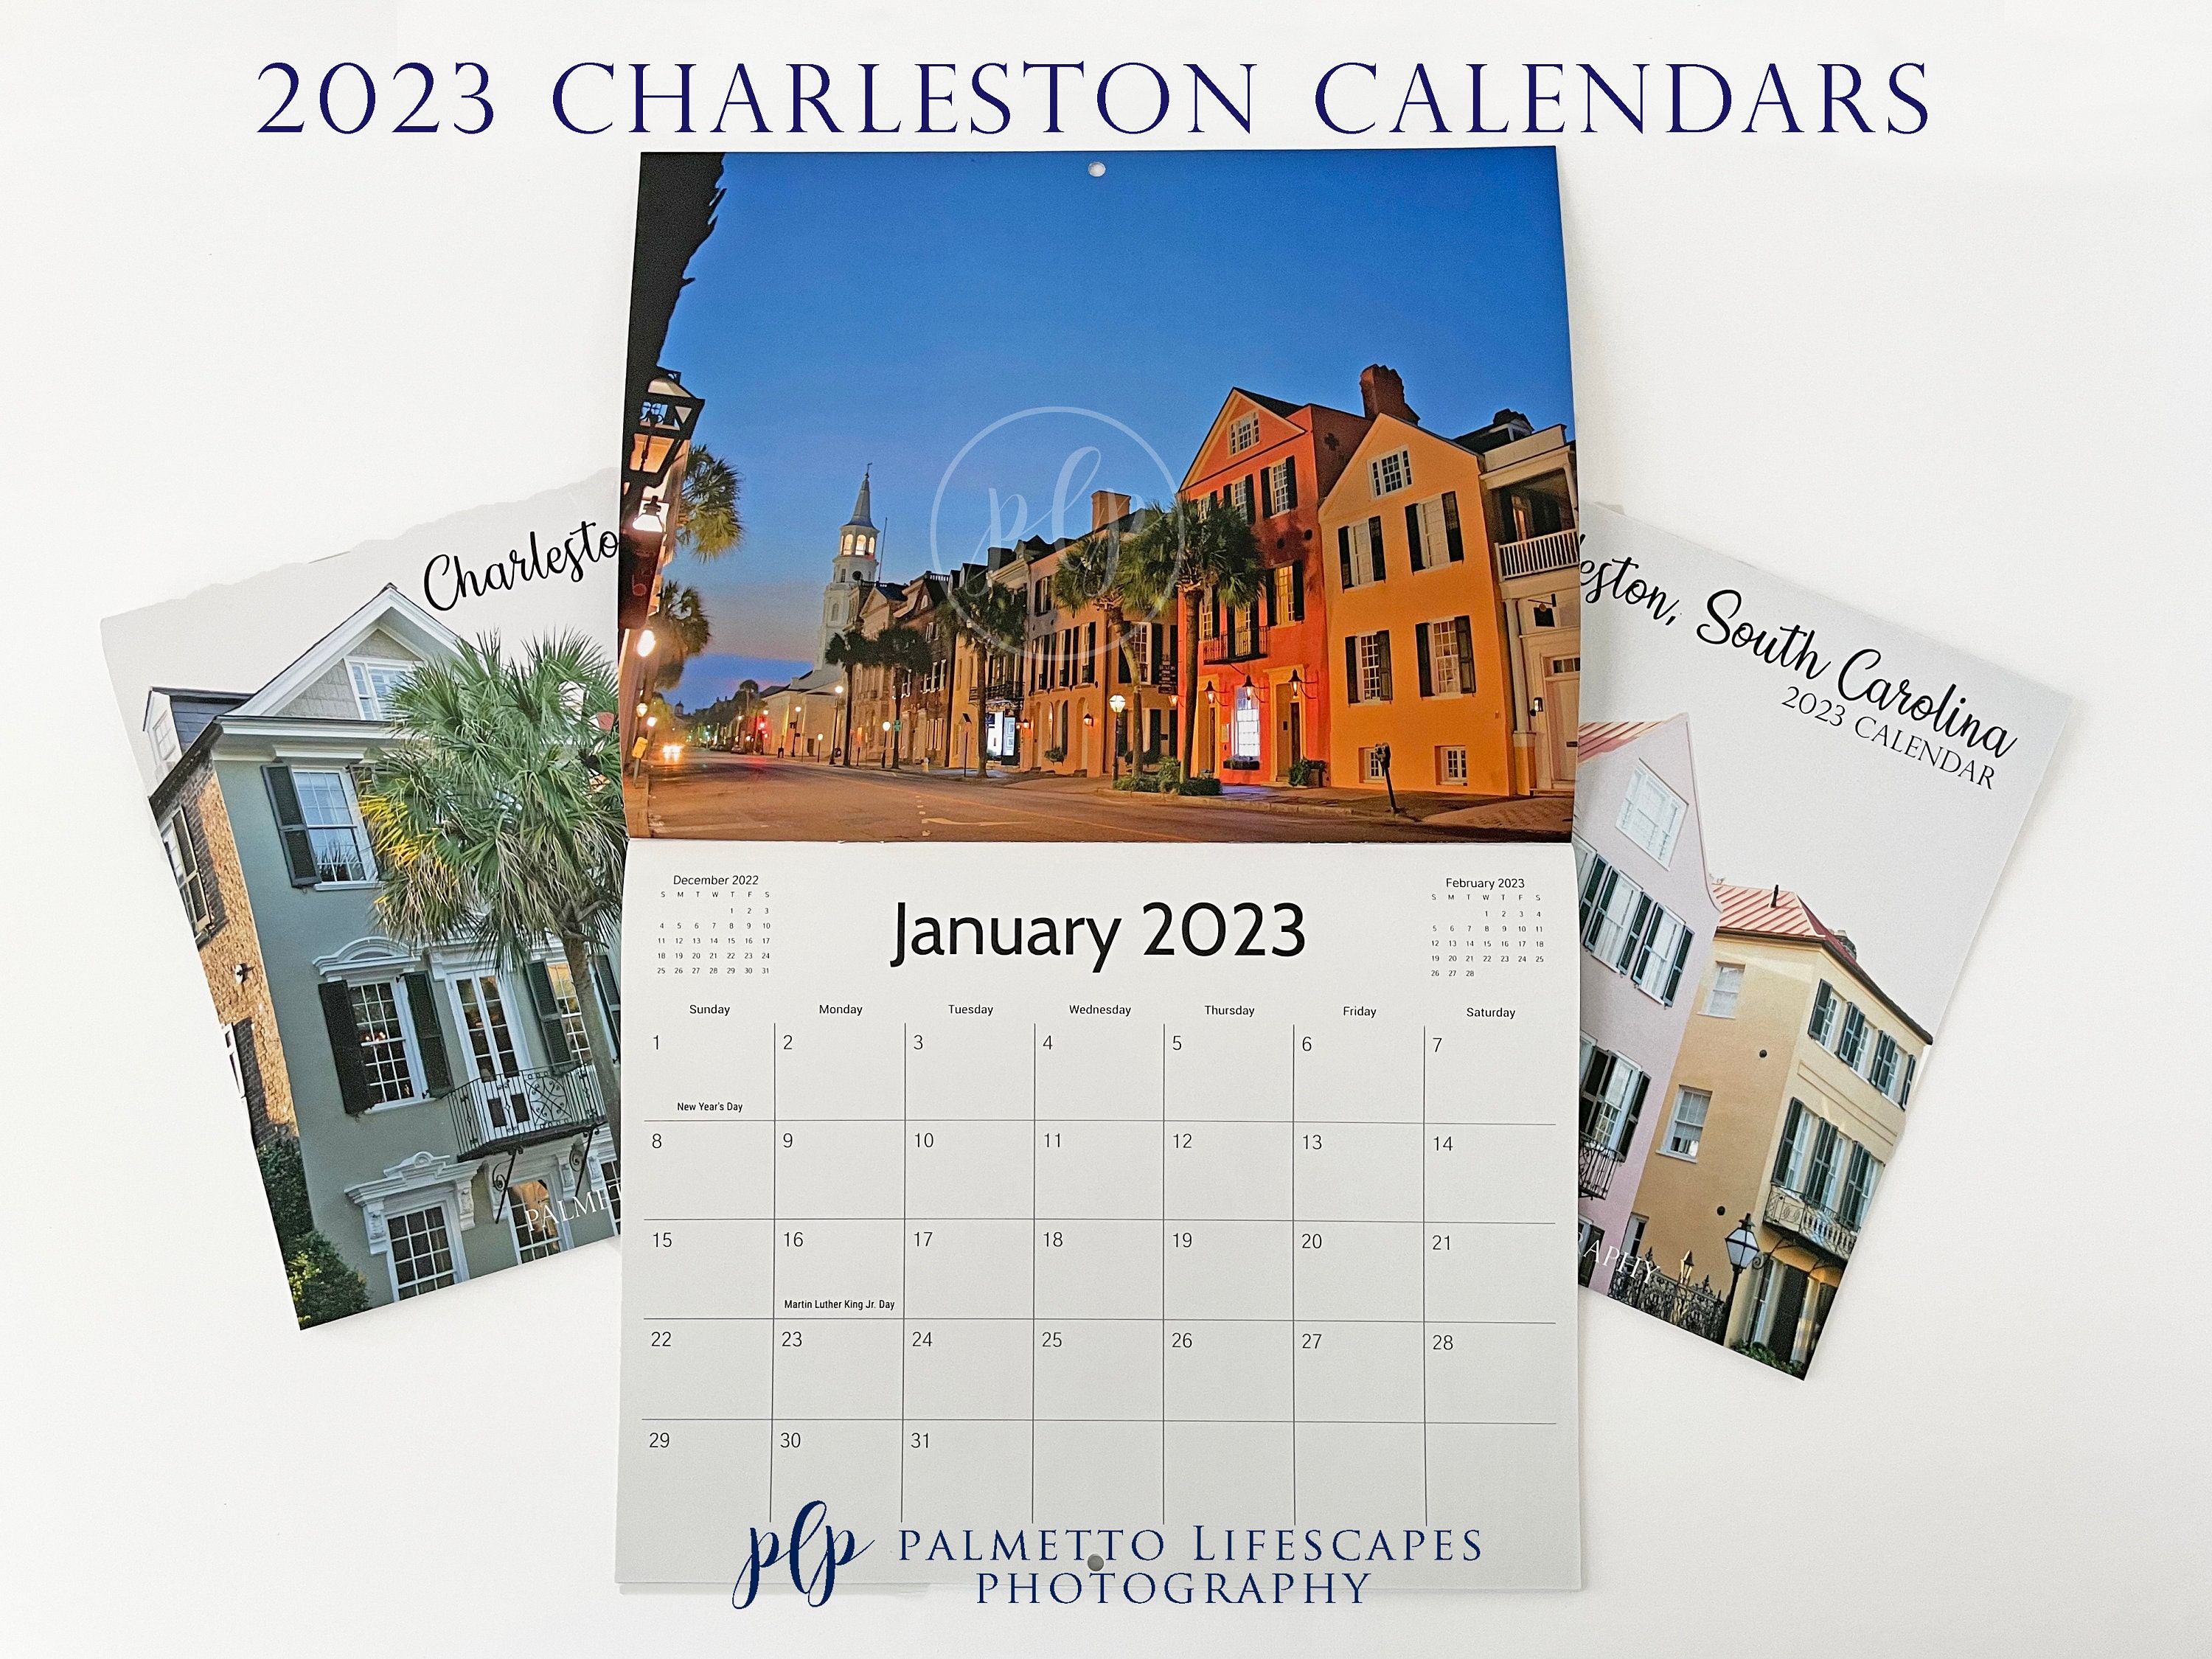 2023-charleston-calendar-charleston-calendar-south-carolina-etsy